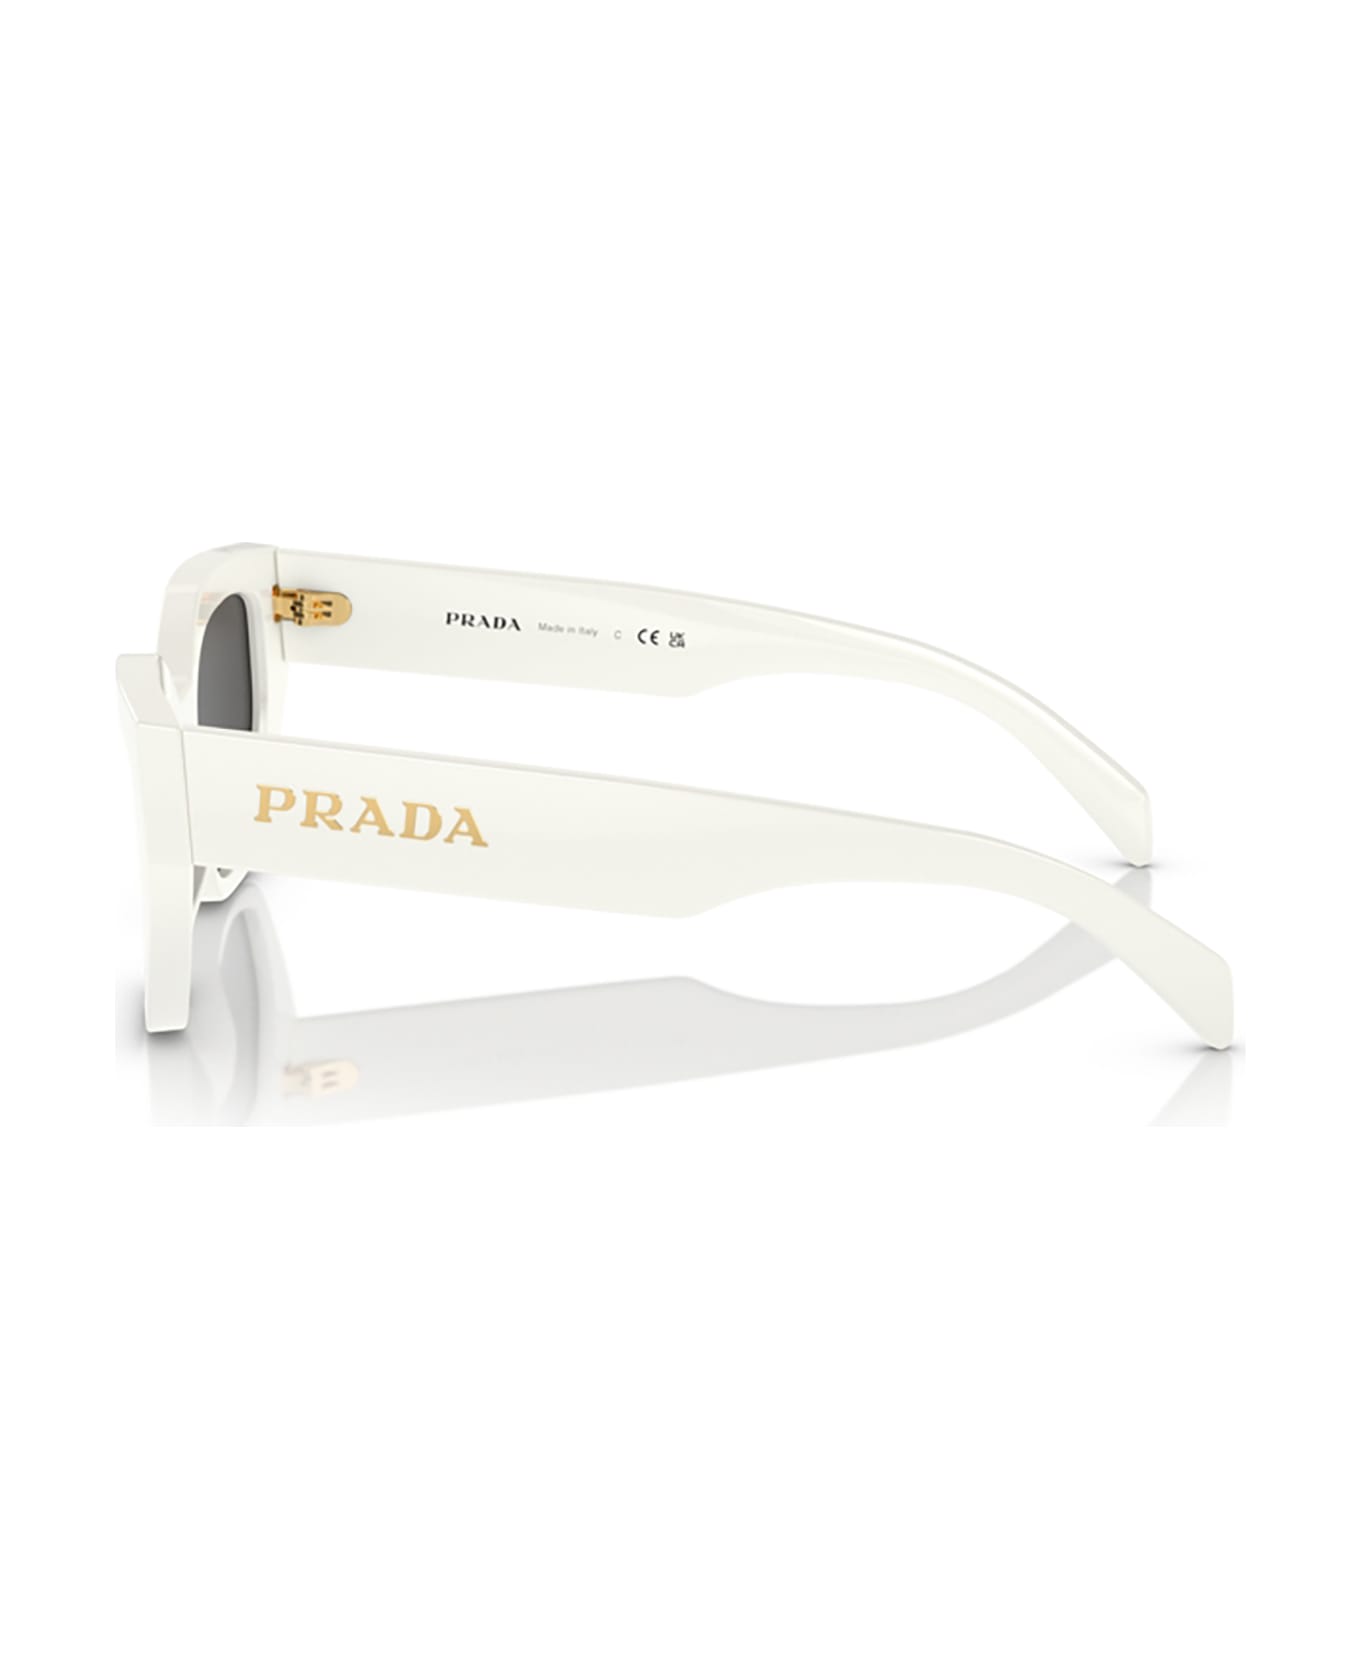 Prada Eyewear Pr A09s Talc Sunglasses - Talc